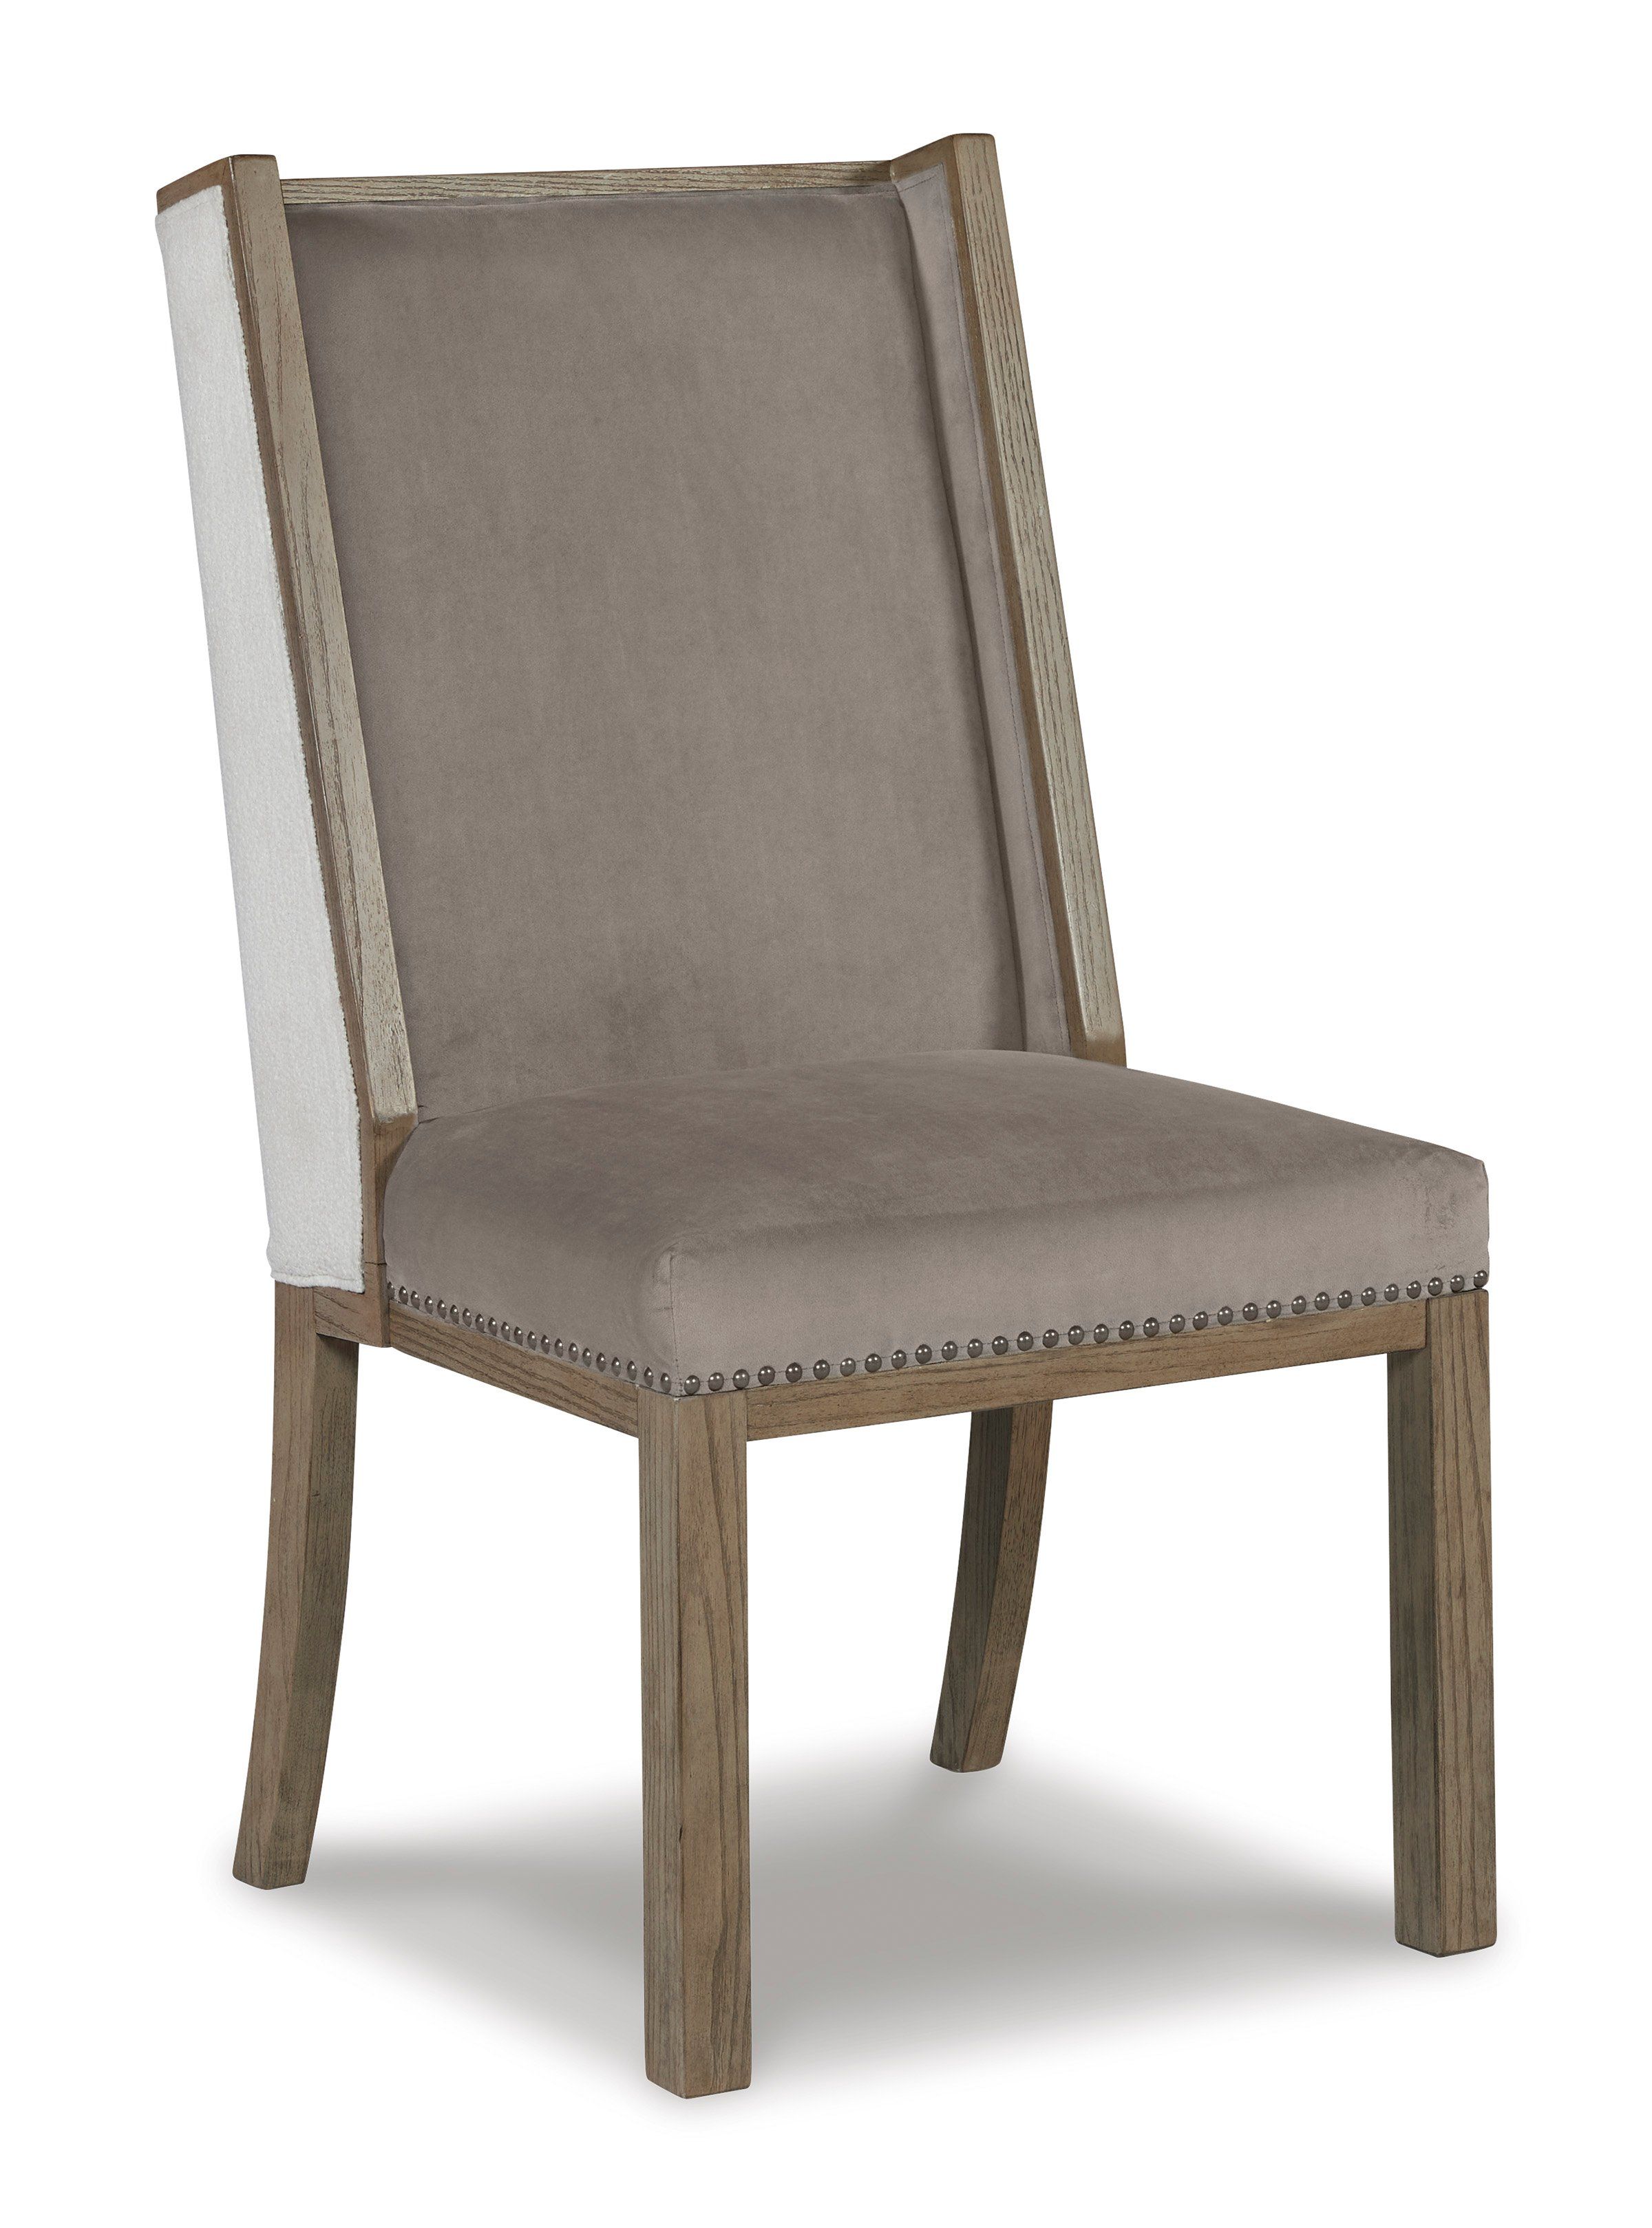 Chrestner Wingback Chair